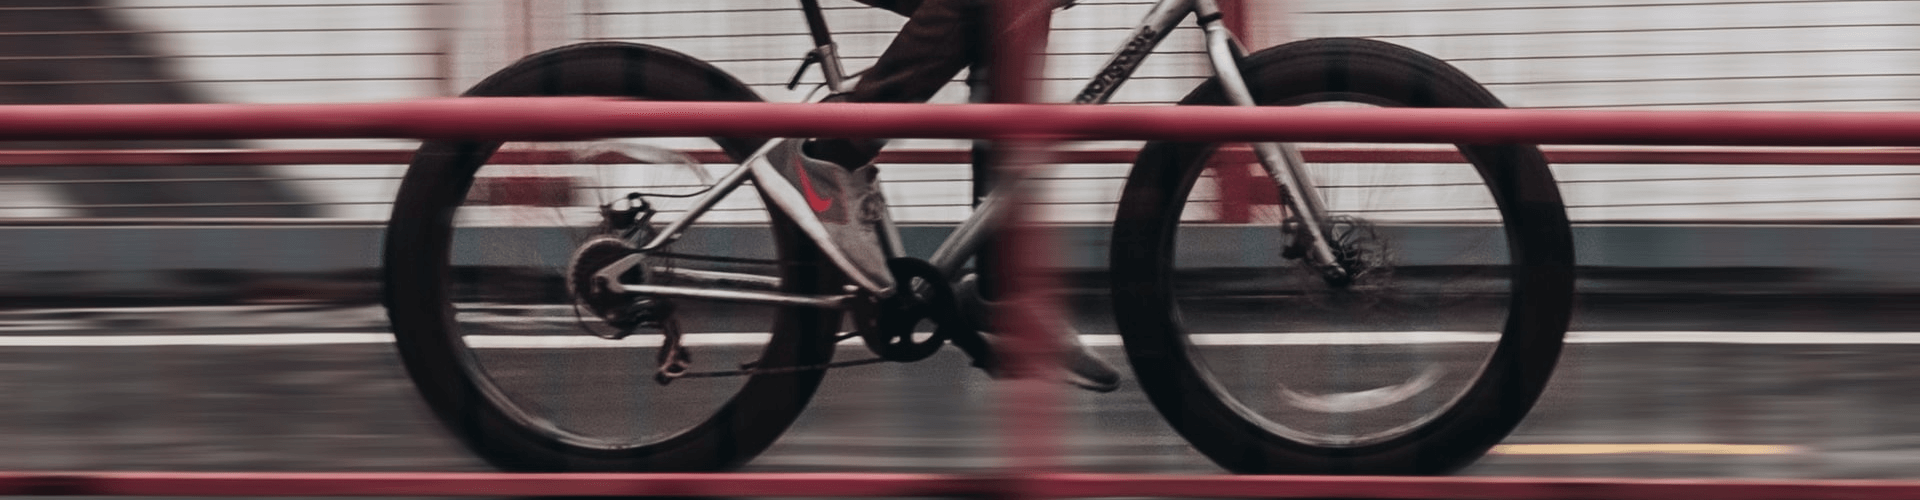 Smartengeld na aanrijding fiets | LetselPro